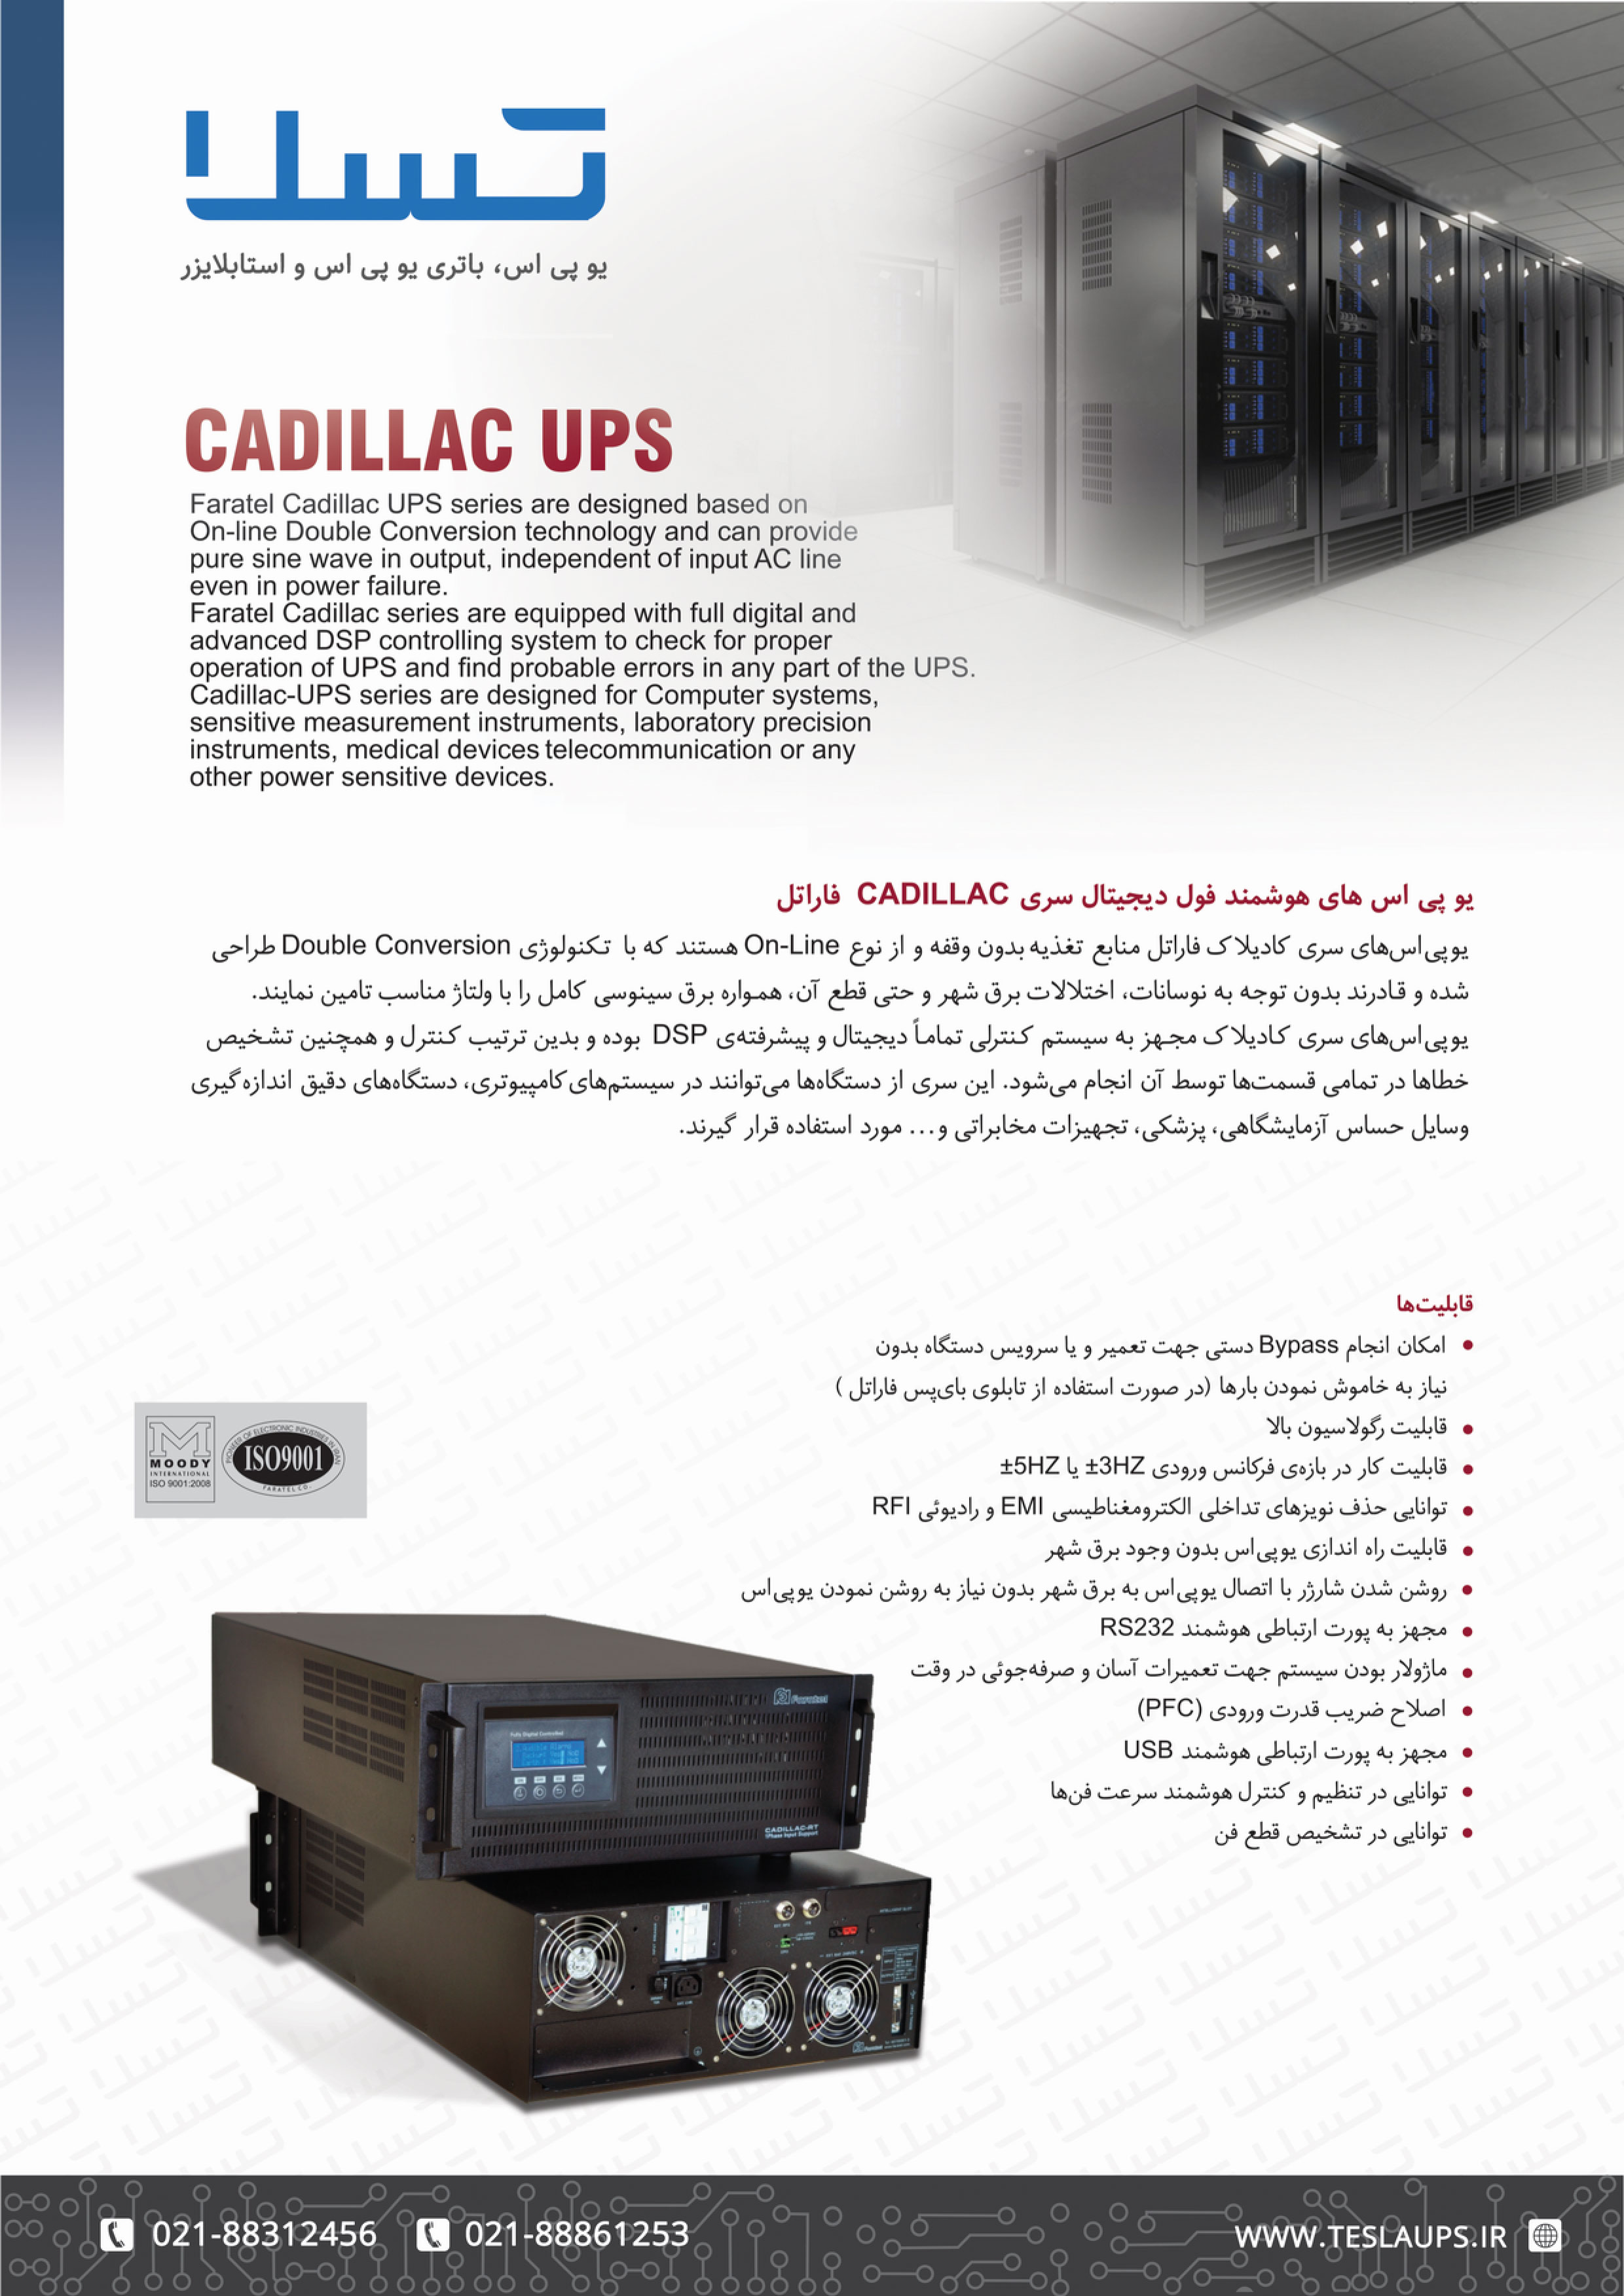 Cadillac UPS catalog 10KVA Faratel 